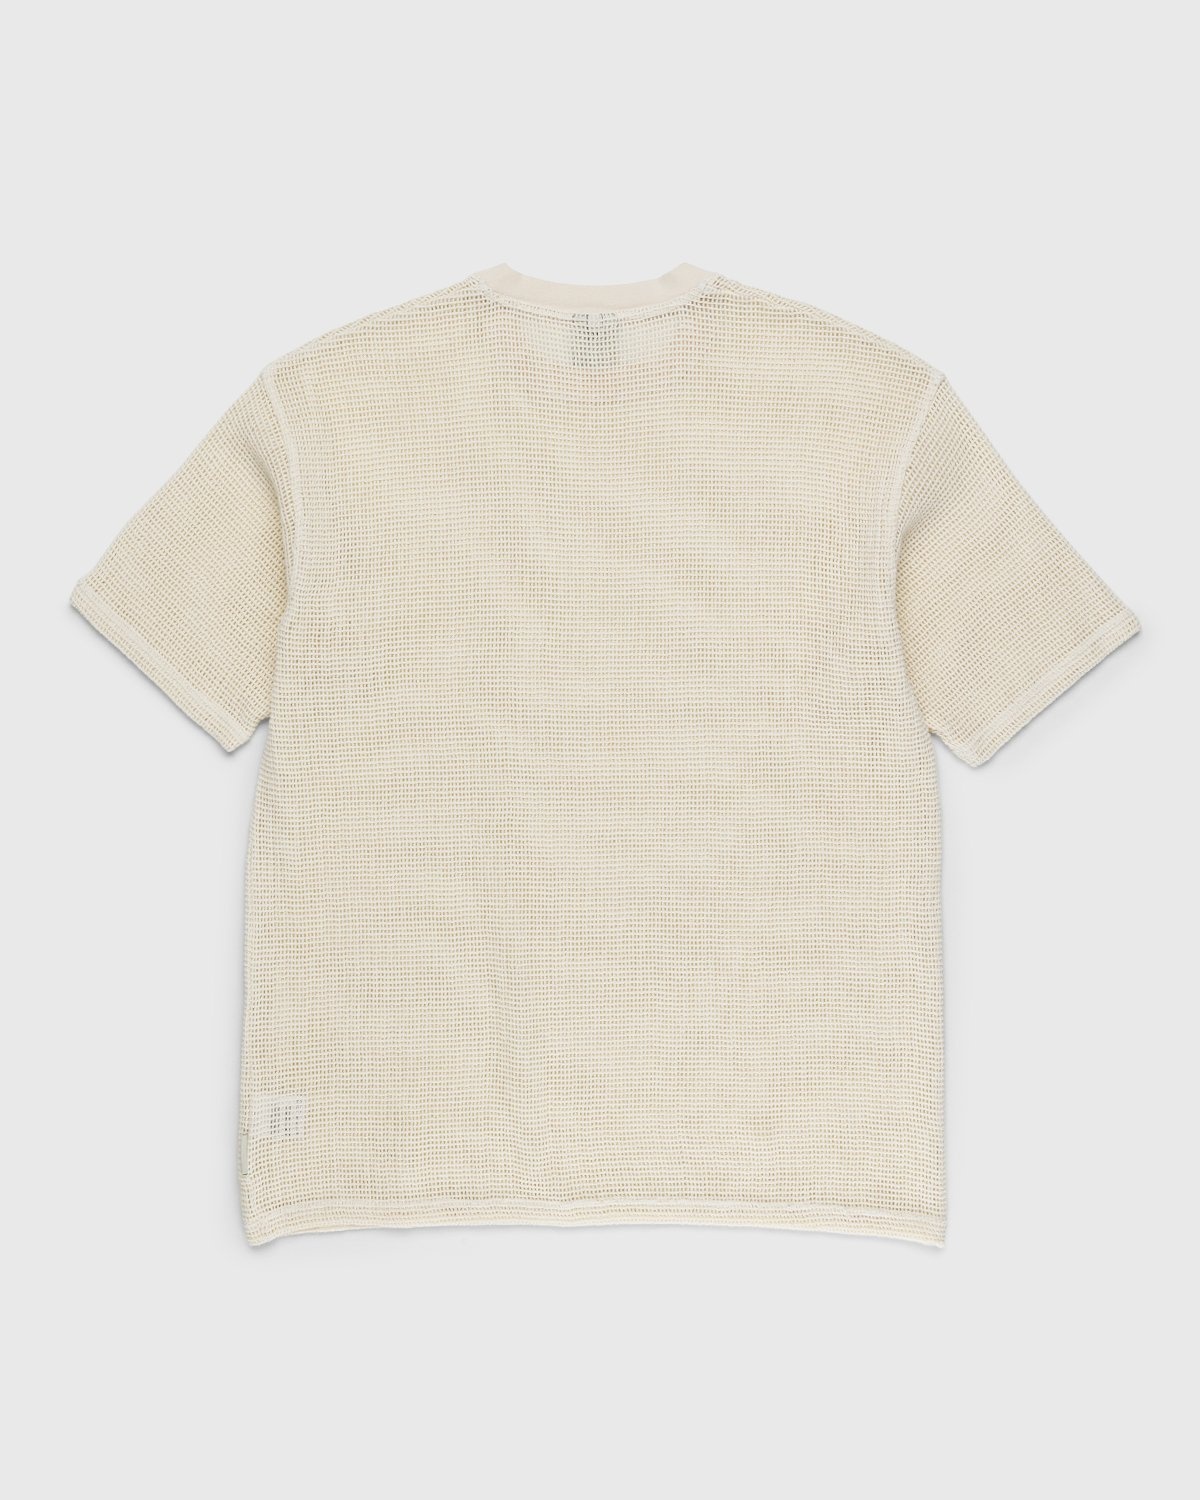 Highsnobiety – Knit Mesh Jersey T-Shirt White | Highsnobiety Shop